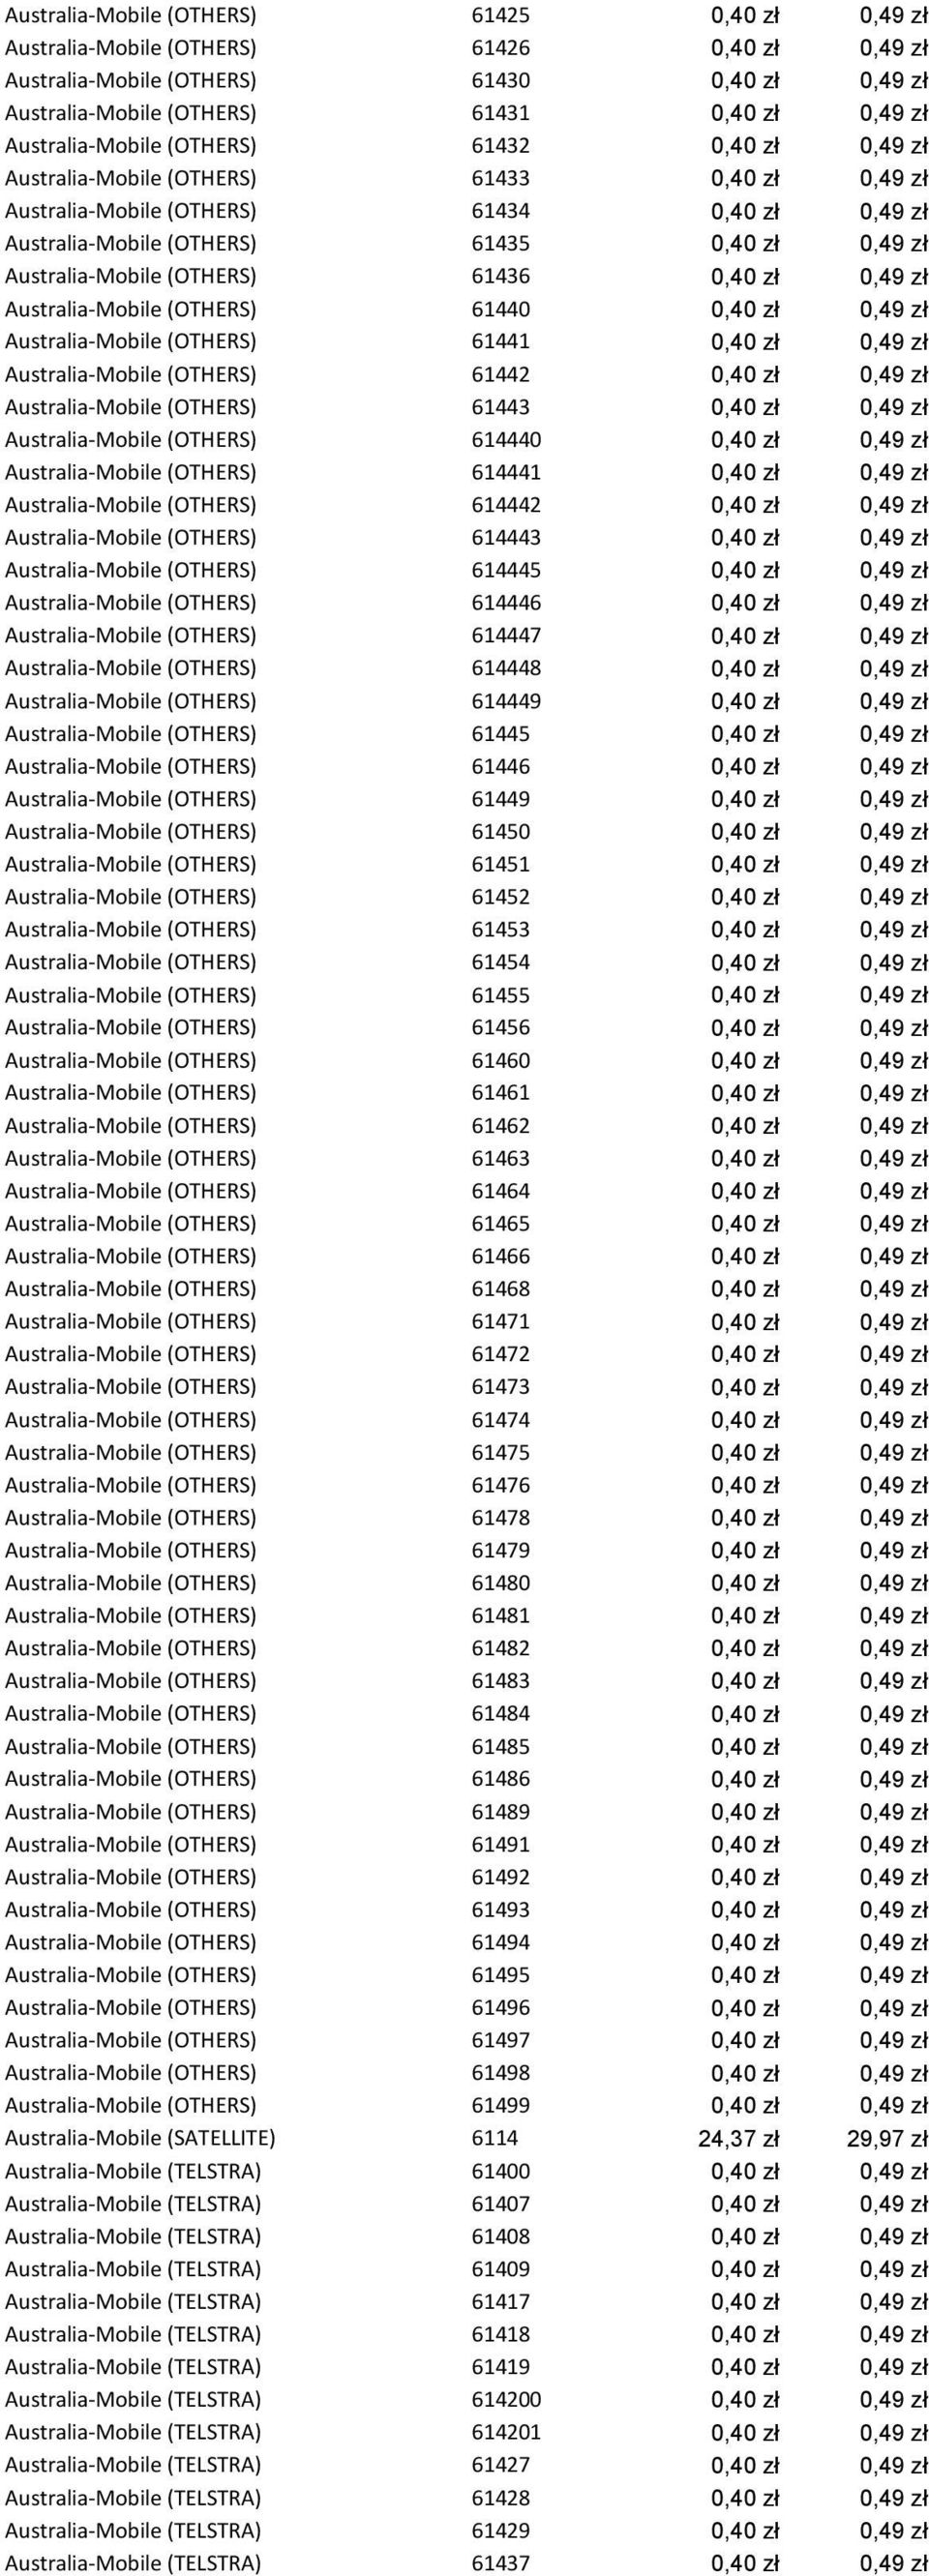 Australia-Mobile (OTHERS) 61436 0,40 zł 0,49 zł Australia-Mobile (OTHERS) 61440 0,40 zł 0,49 zł Australia-Mobile (OTHERS) 61441 0,40 zł 0,49 zł Australia-Mobile (OTHERS) 61442 0,40 zł 0,49 zł